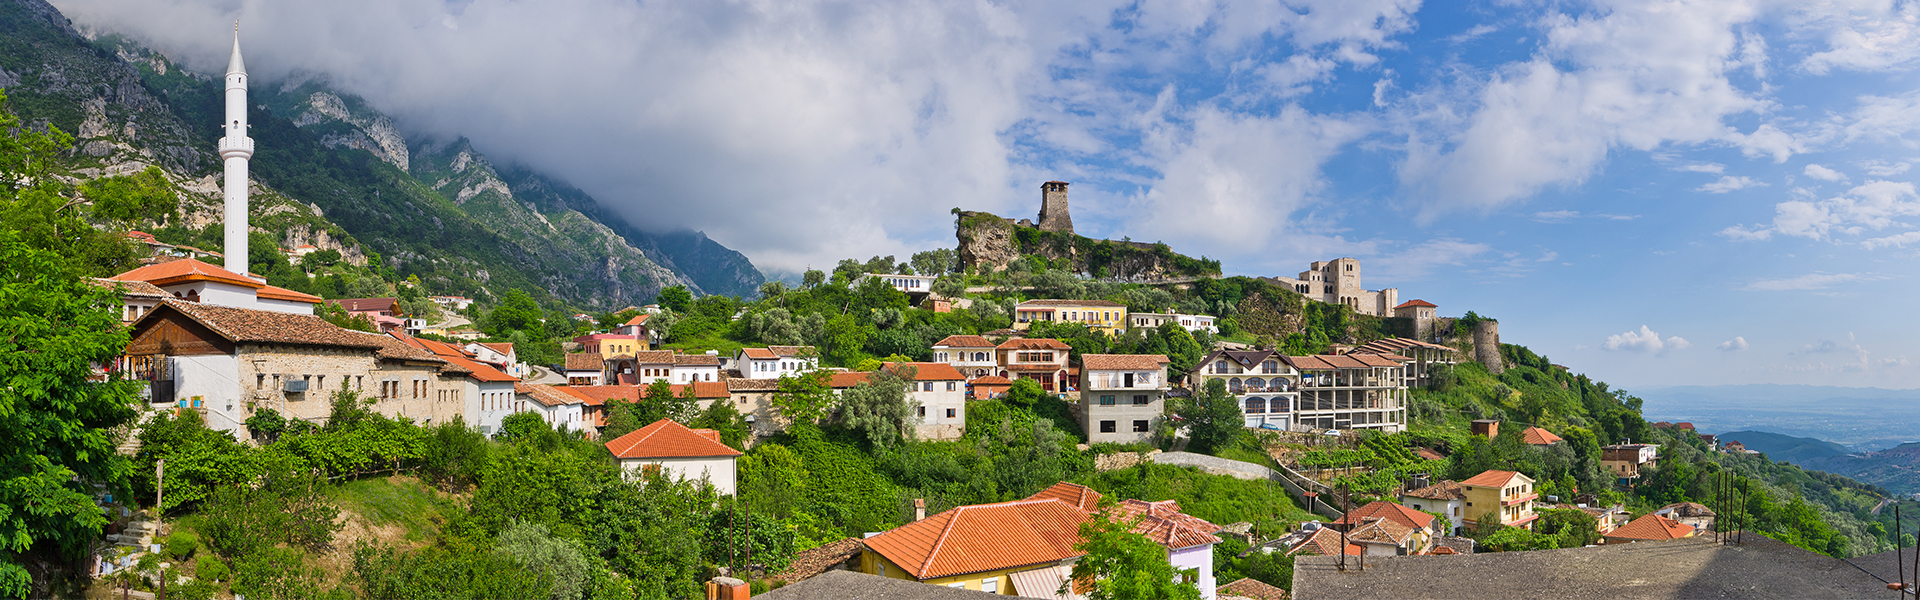 Kruja castello, tour dell'Albania, viaggio in Albania